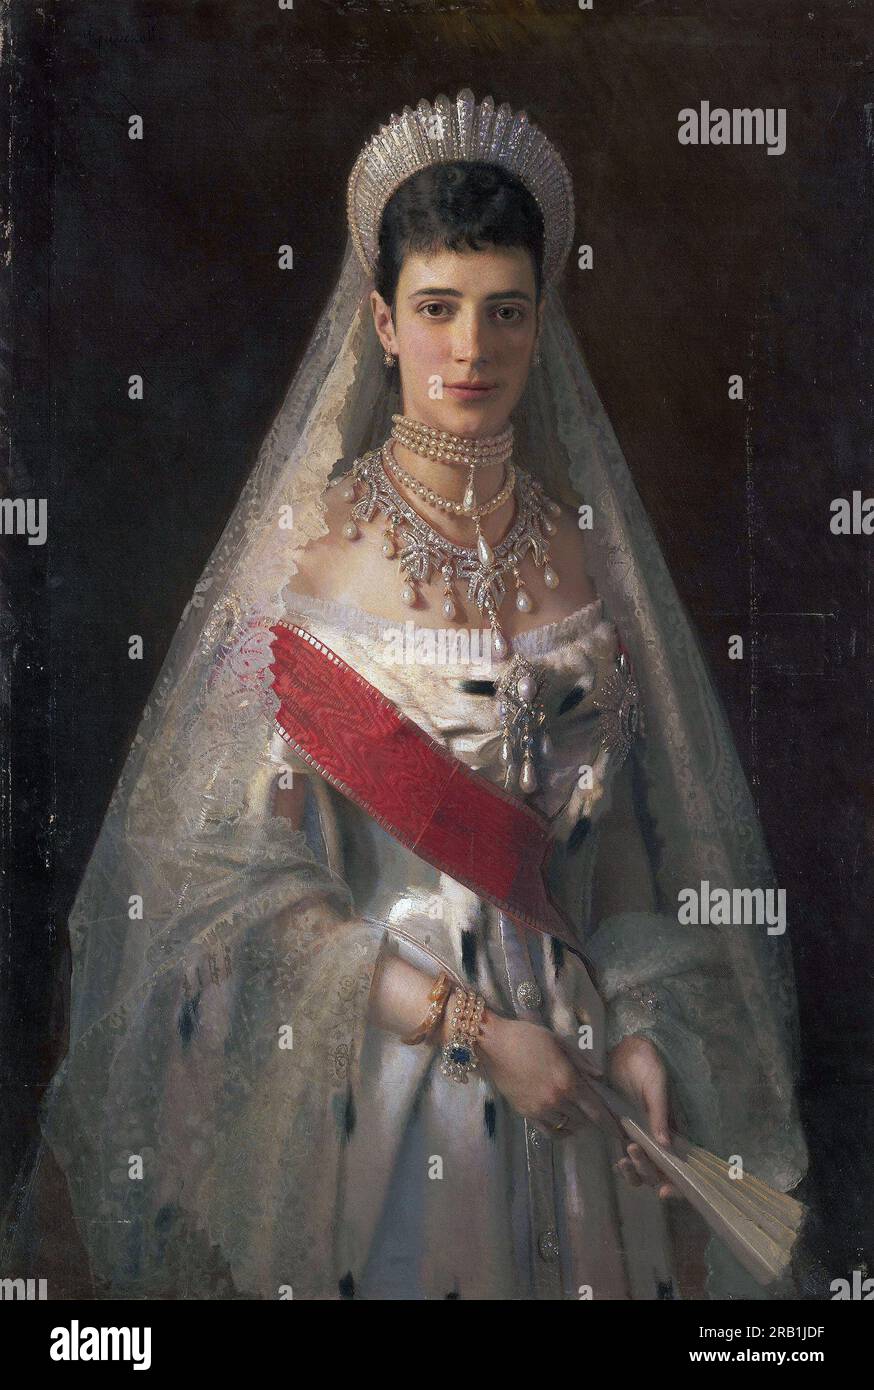 La emperatriz María Feodorovna, María Feodorovna, María Feodorovna, María Feodorovna (1847-1928), princesa Dagmar de Dinamarca, fue emperatriz de Rusia de 1881 a 1894 como esposa del emperador Alejandro III Pintura de Ivan Kramskoi Foto de stock